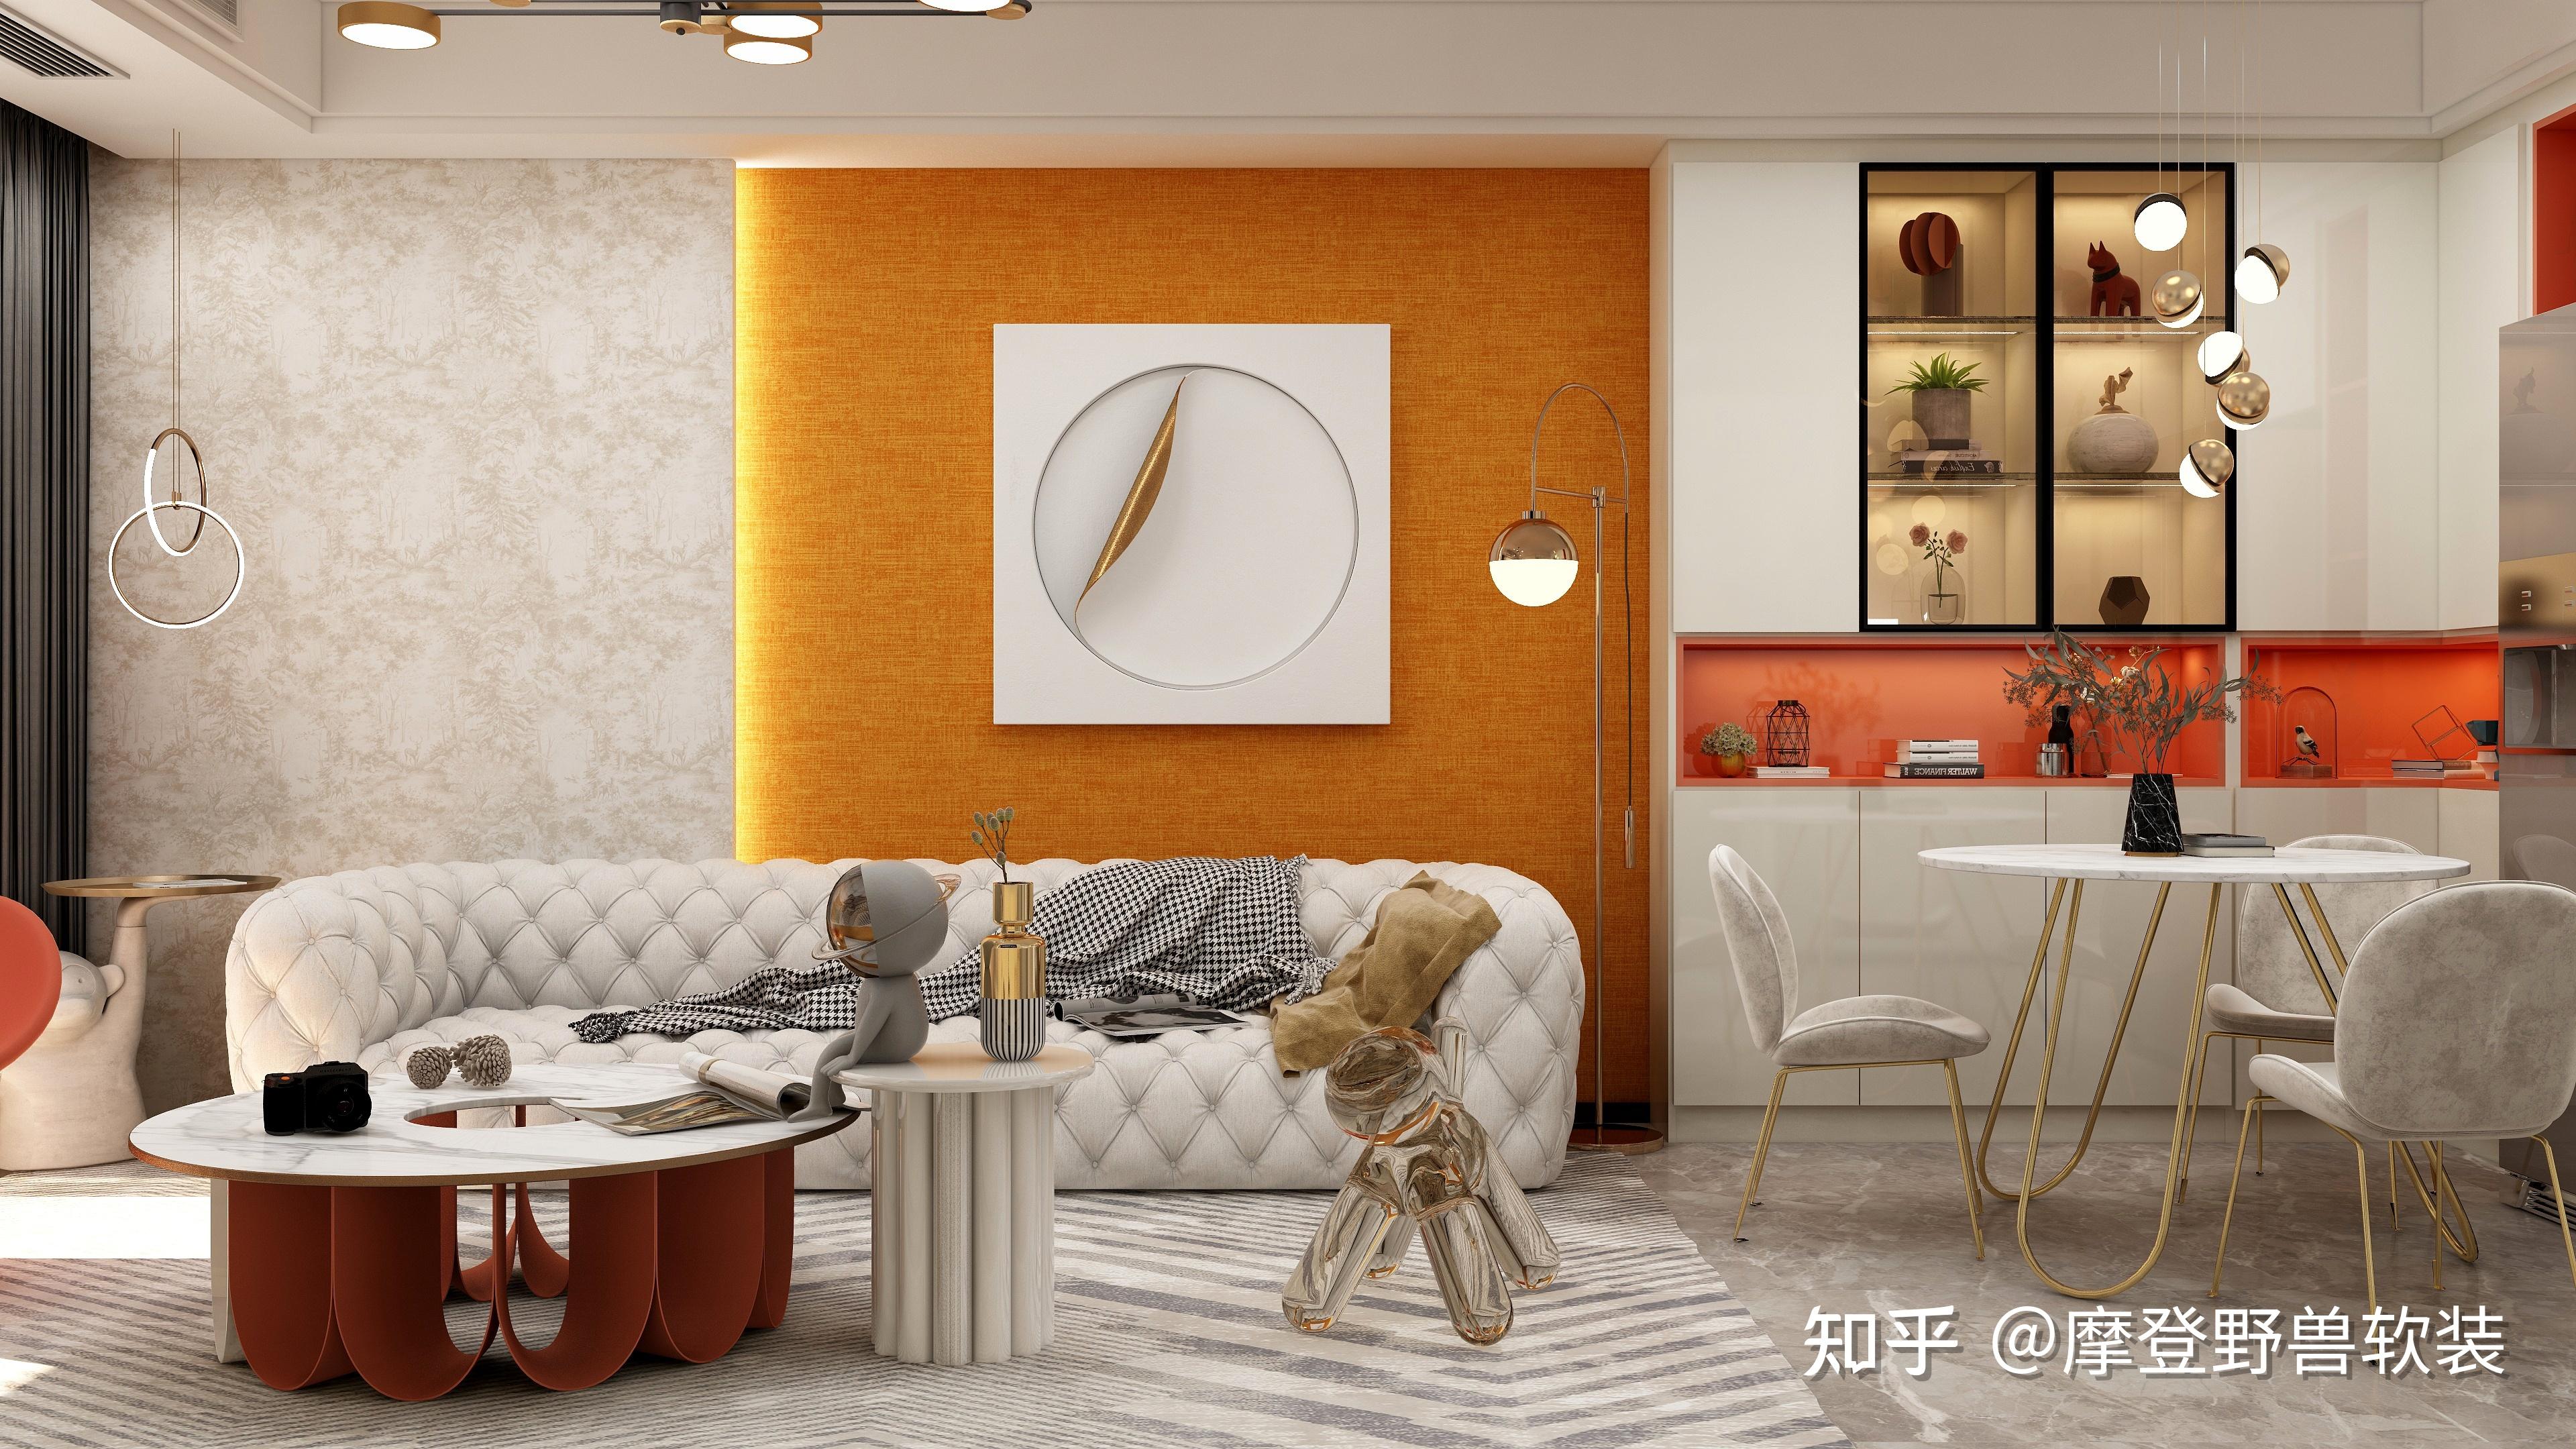 沙发背景墙铺贴饱和度较低的摩登野兽品牌墙布,搭配饱和度高的爱马仕